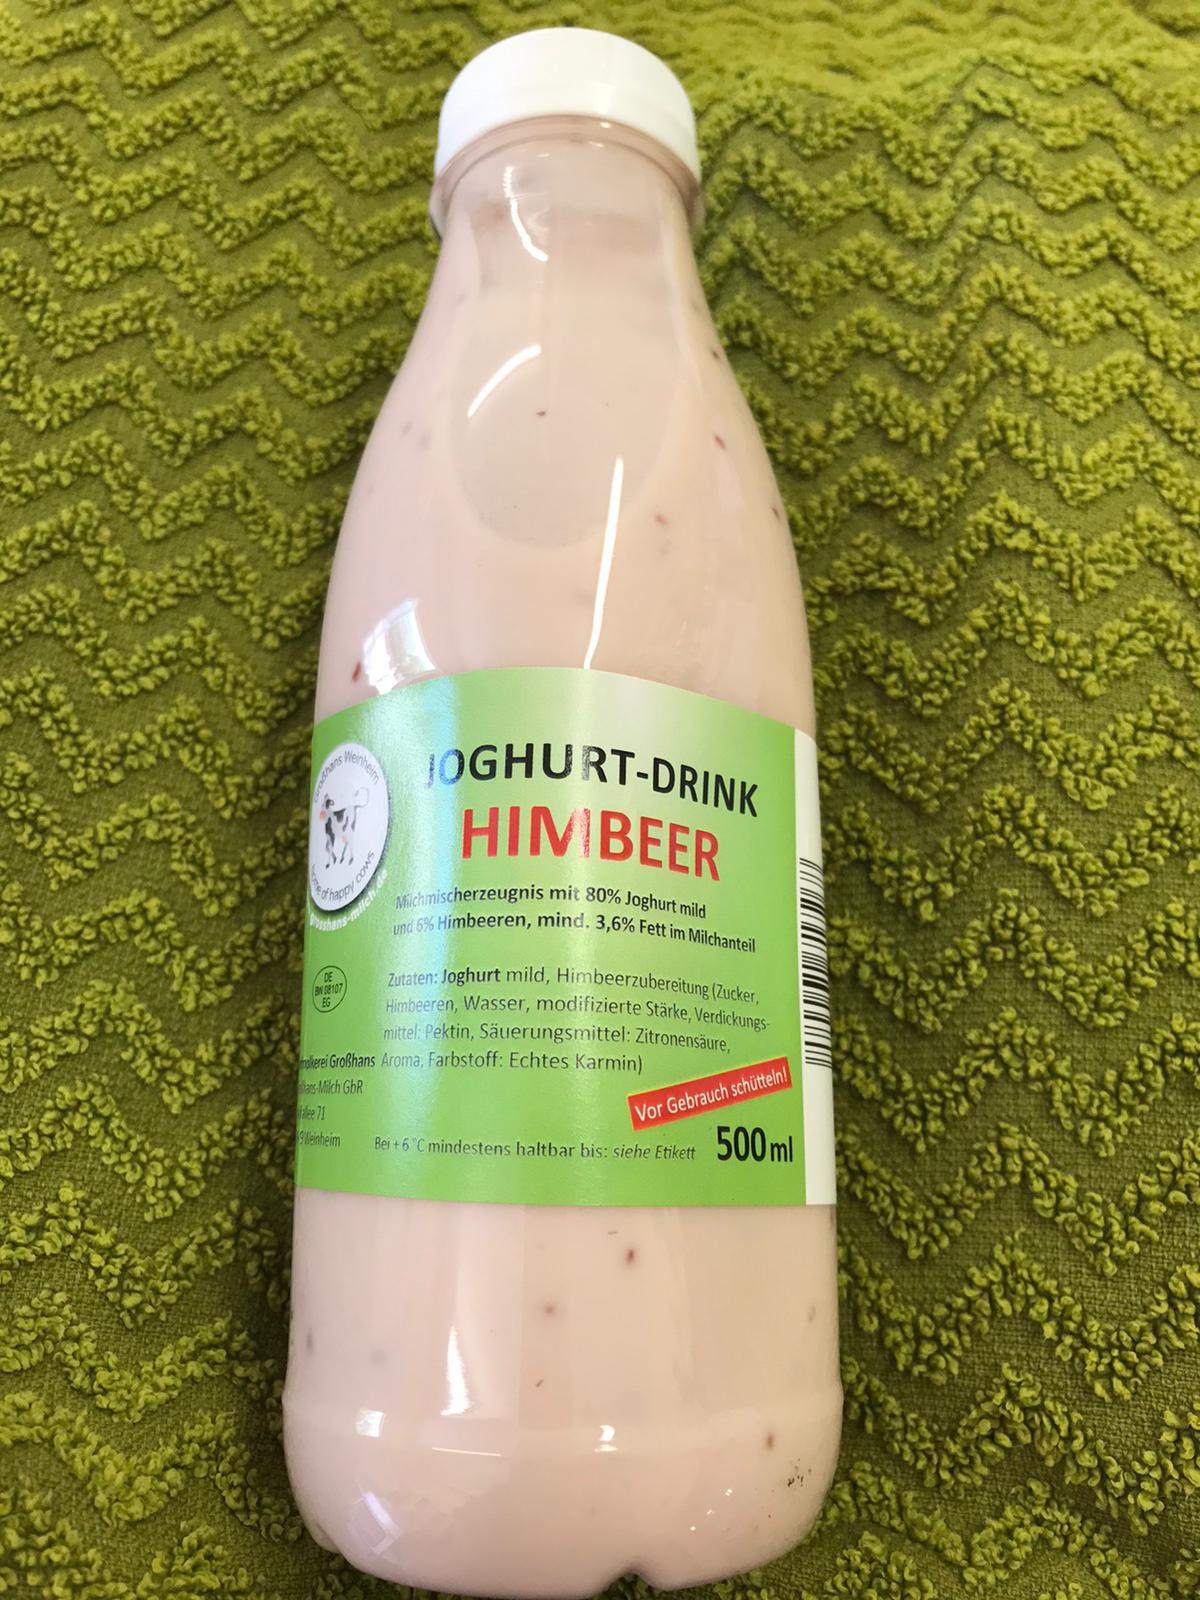 Bauernladen Gieser - Joghurt-Drink Himbeer